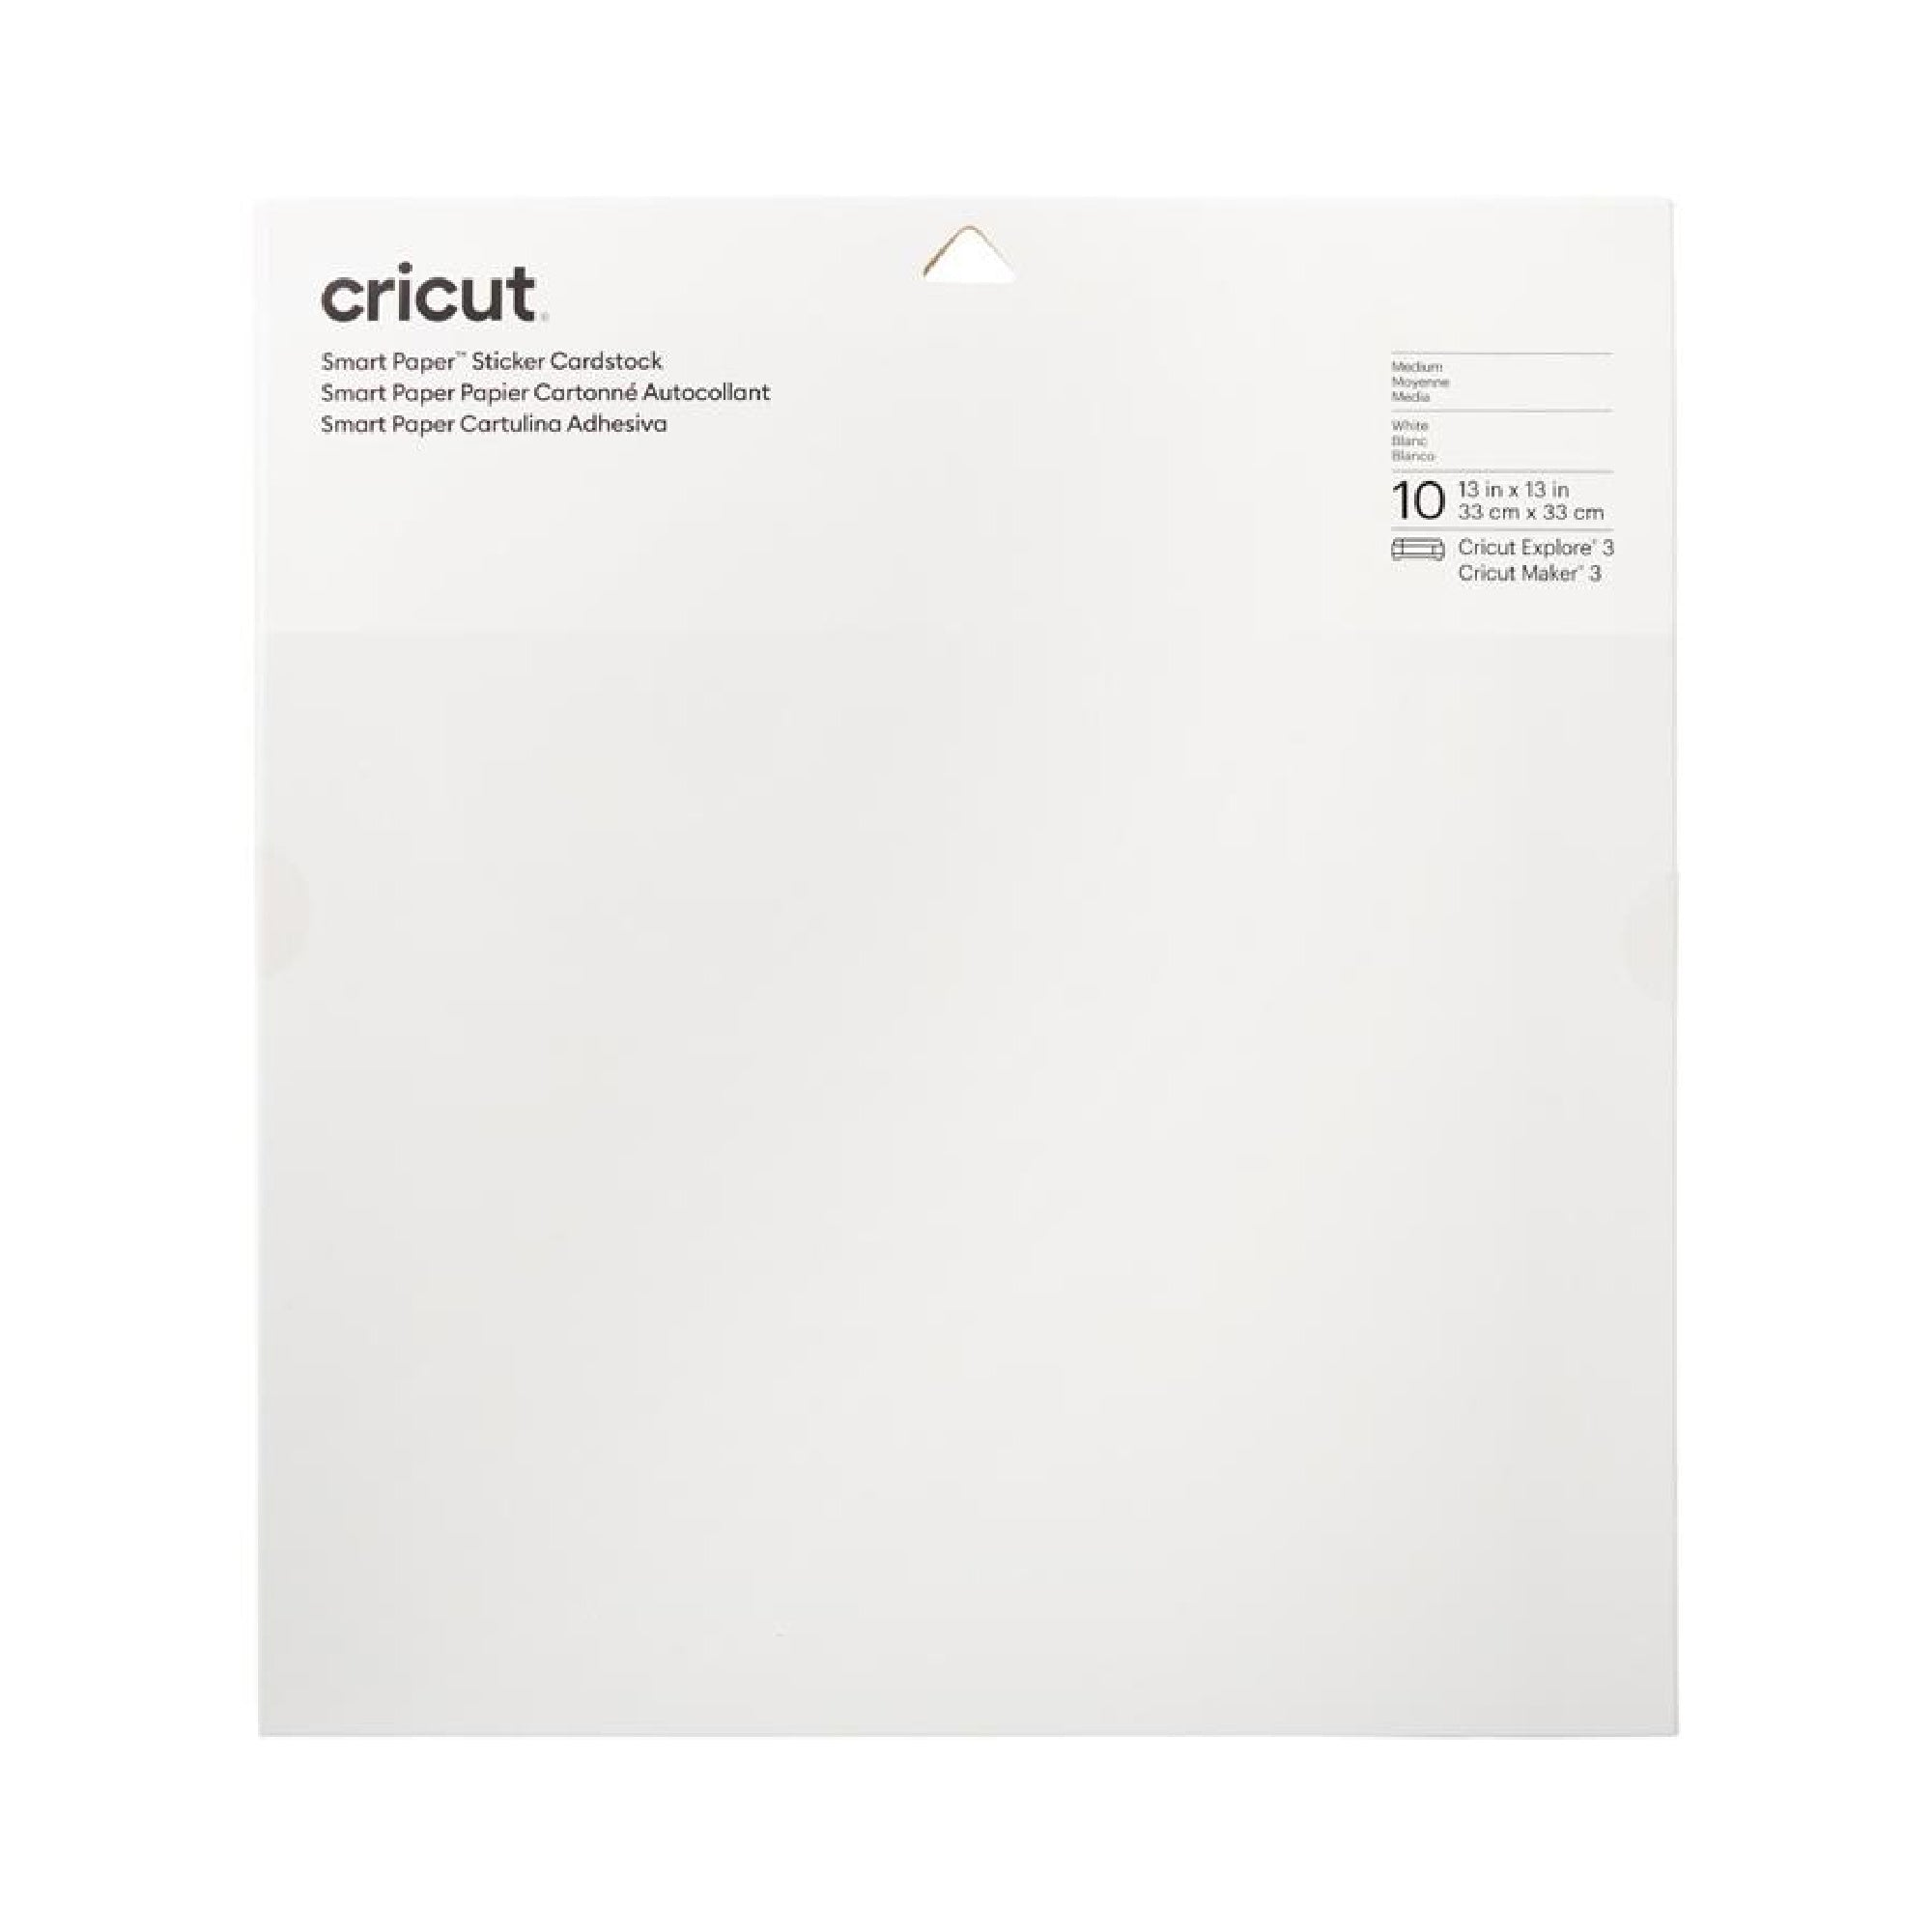 Cricut Smart Sticker Cardstock